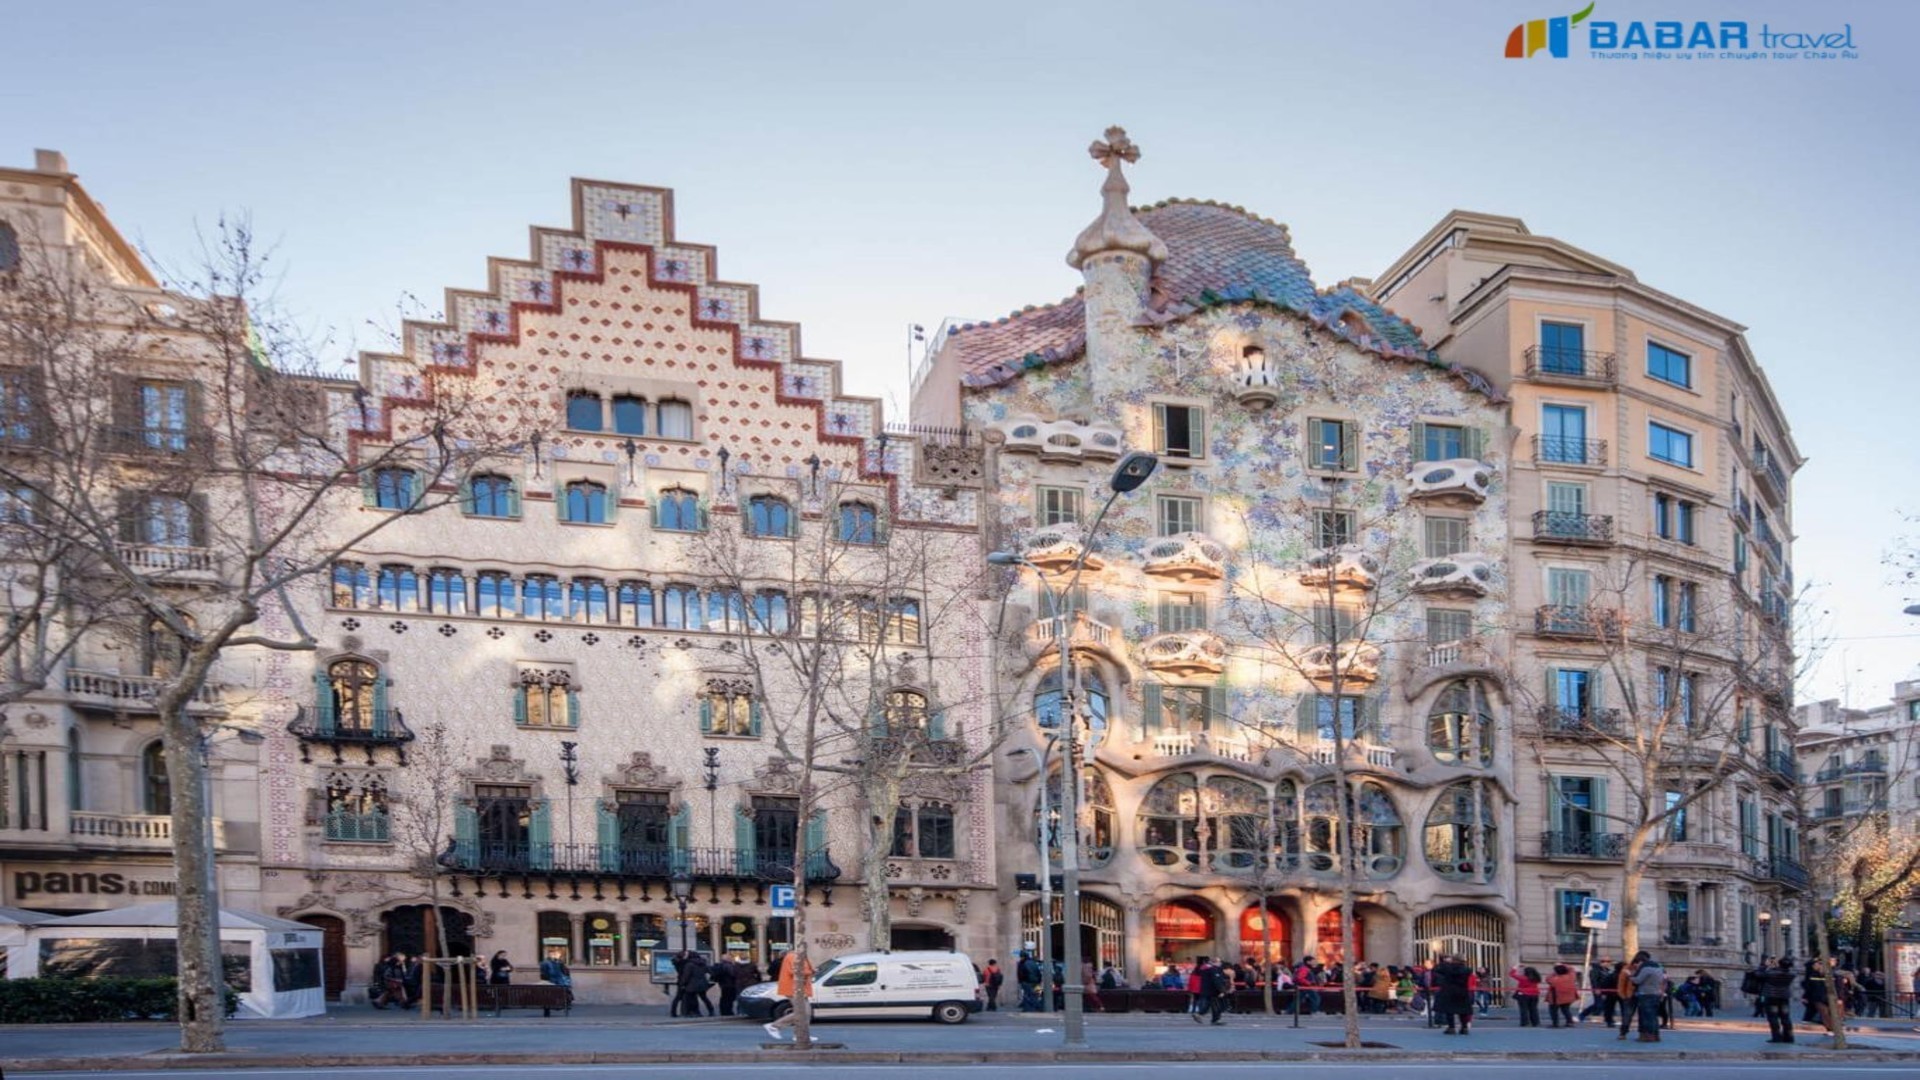 Cùng BabarTravel khám phá Casa Batllo - Tòa nhà rực rỡ sắc màu thu hút hàng triệu du khách tại Barcelona